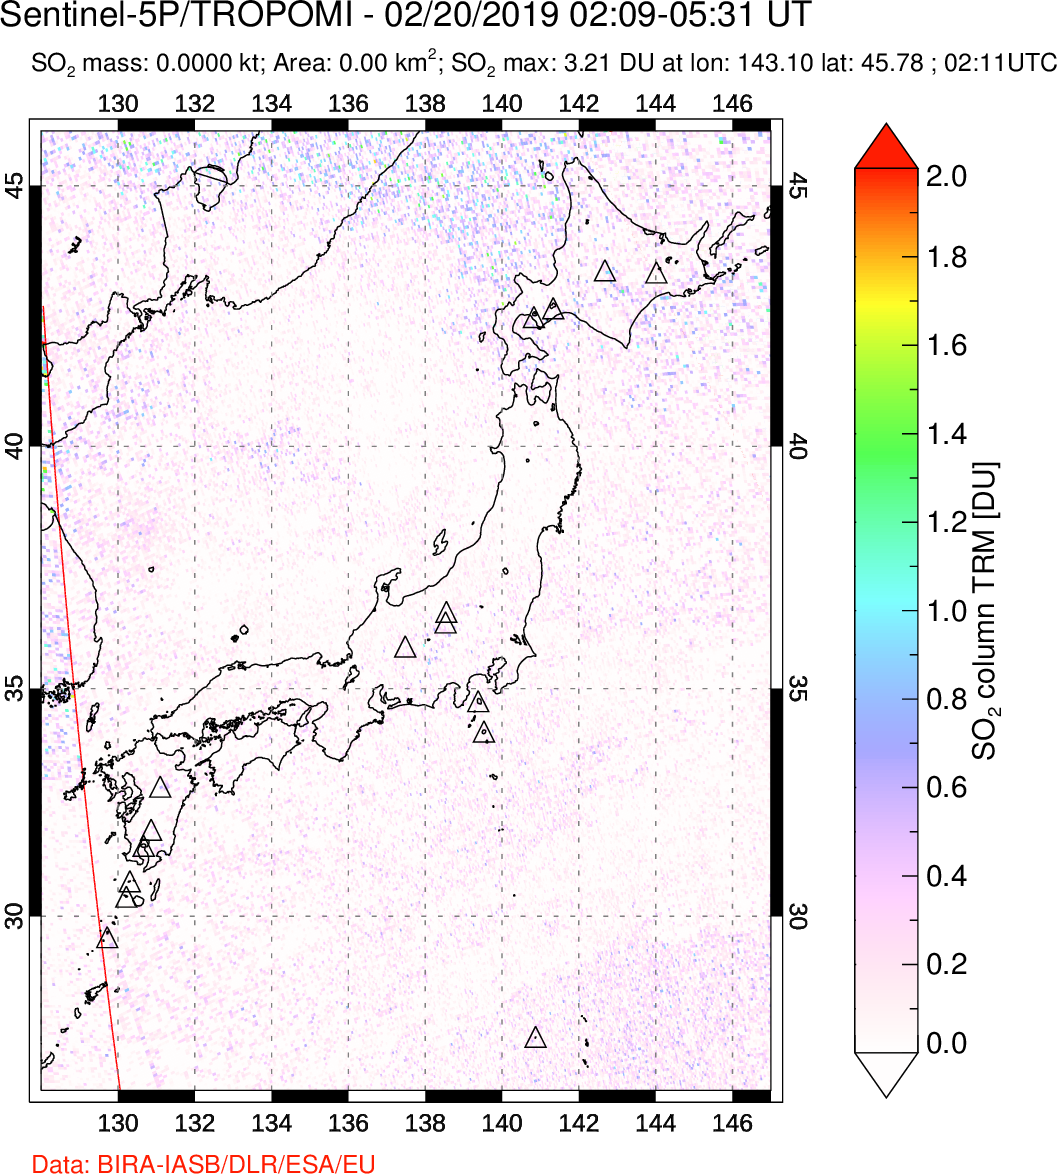 A sulfur dioxide image over Japan on Feb 20, 2019.